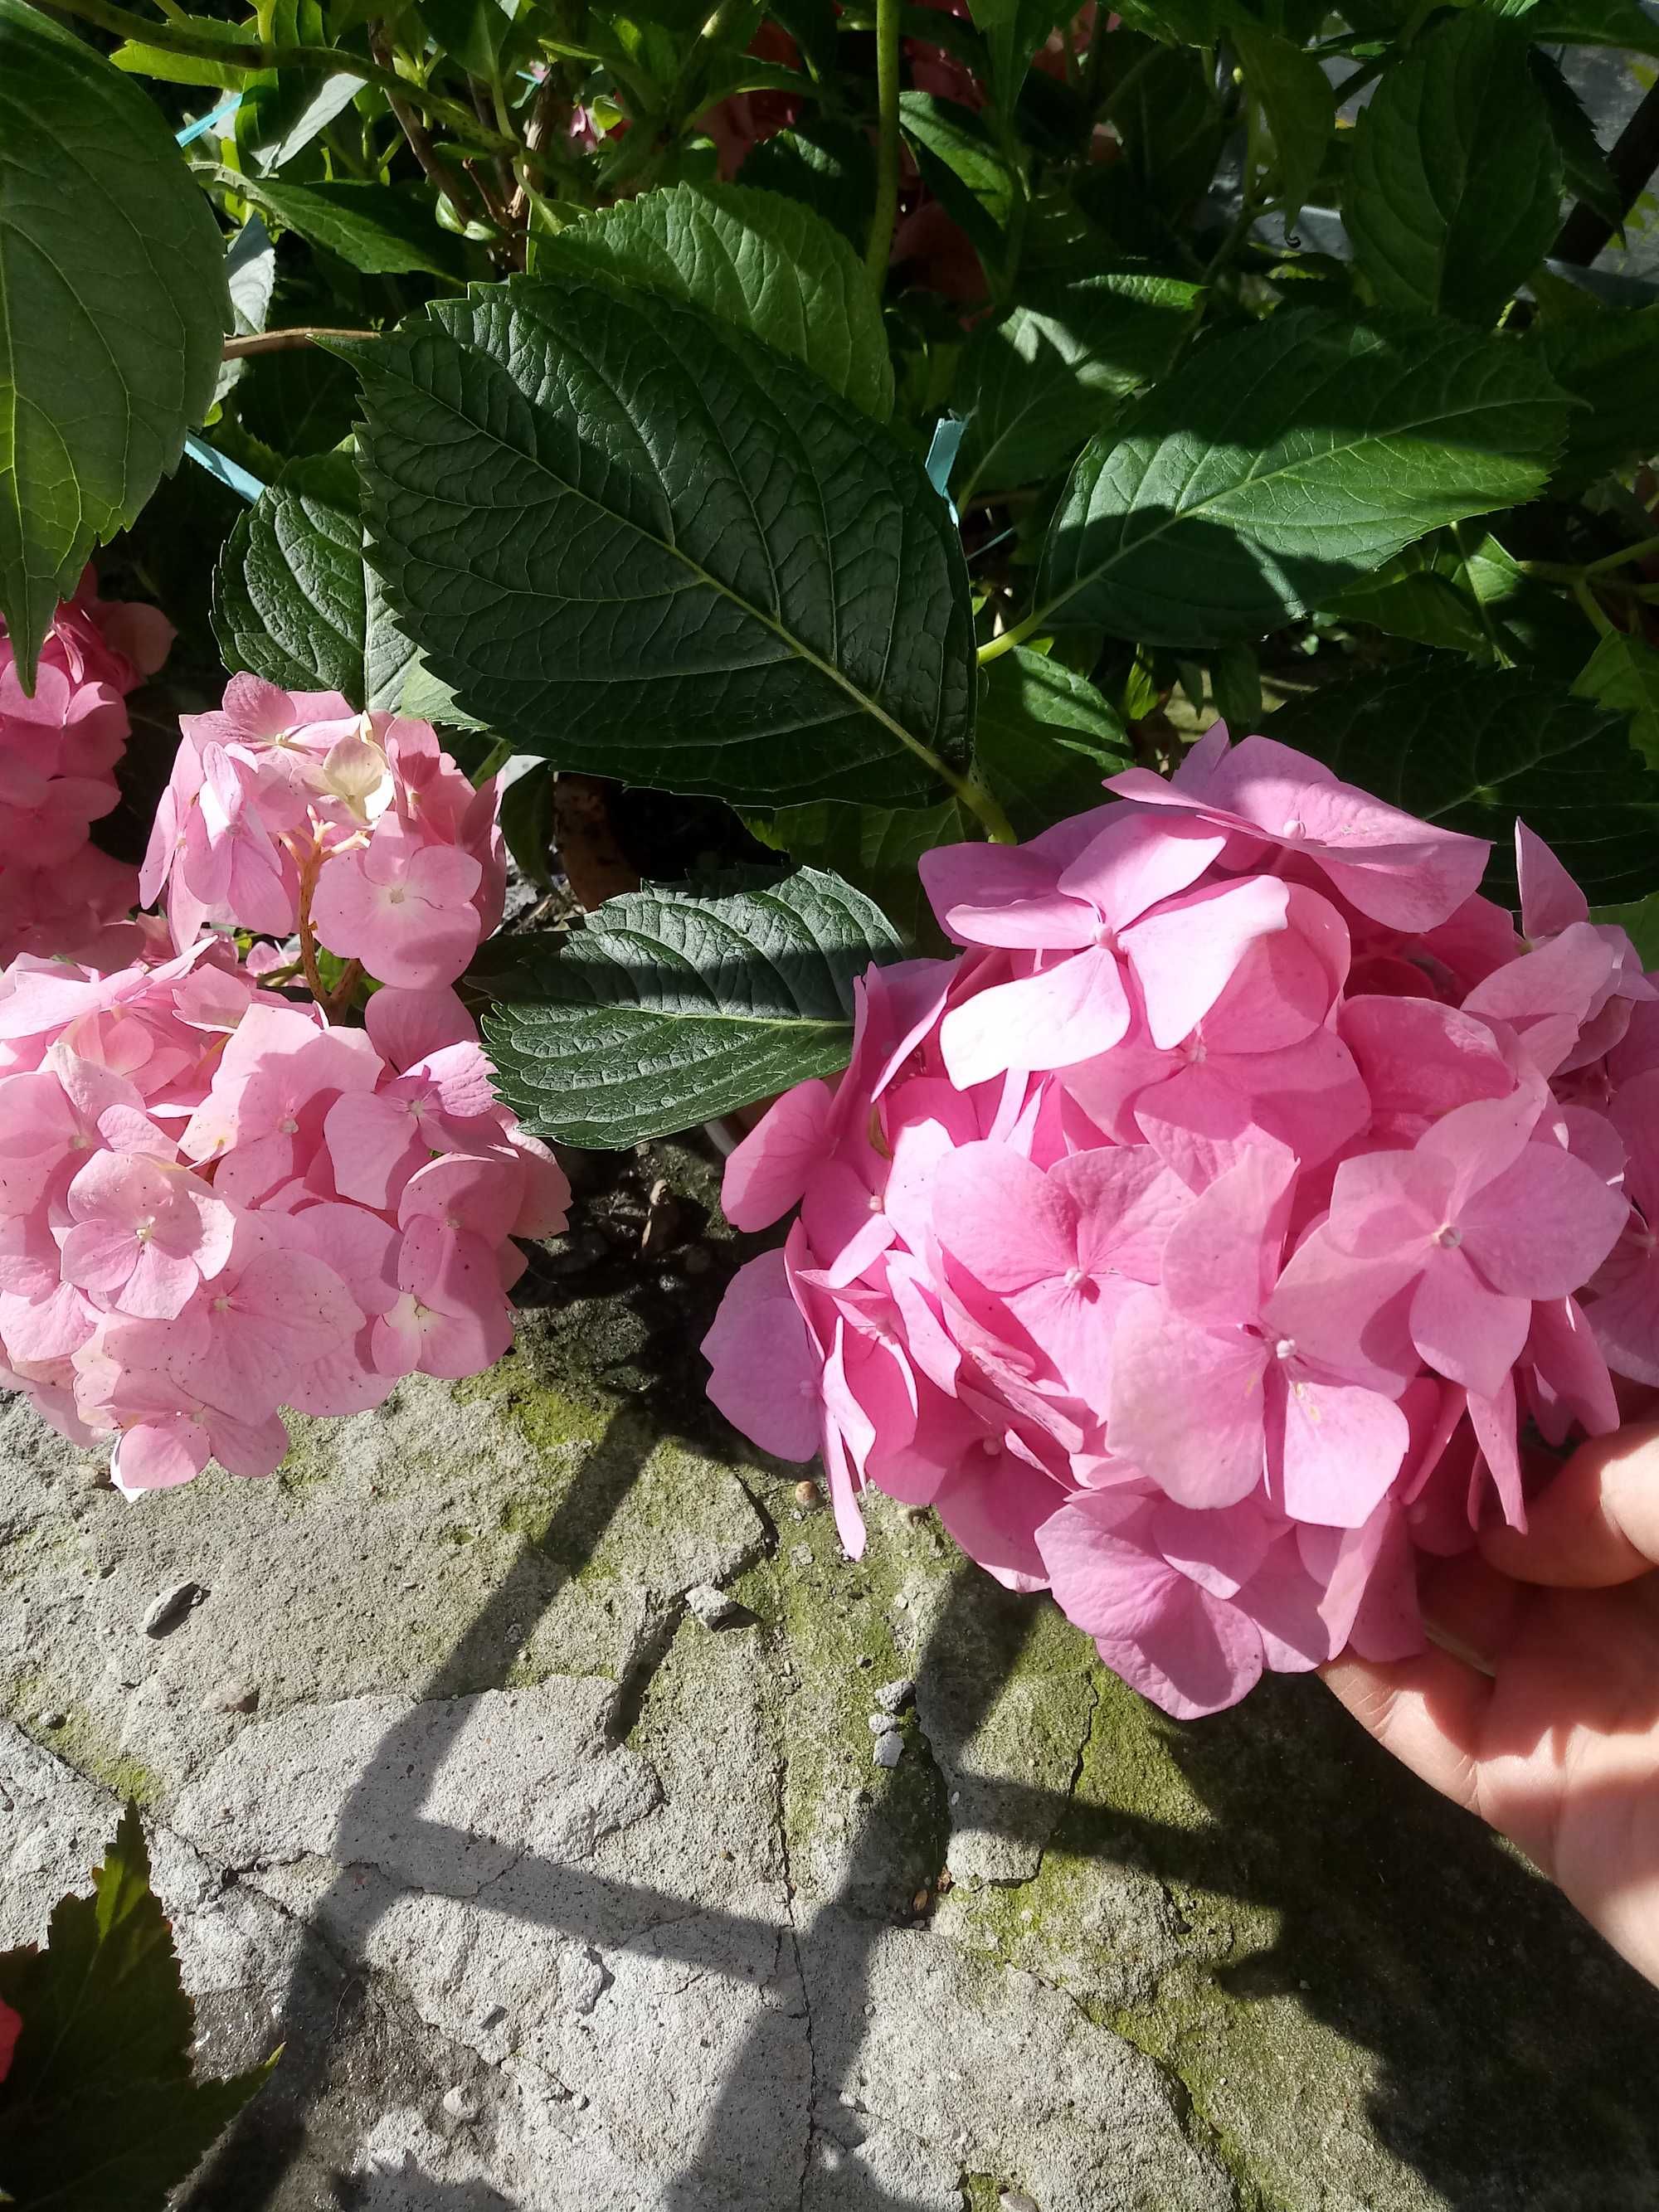 Hortensja ogrodowa różowy kwiat w doniczkach z pąkami. Duże krzaki.